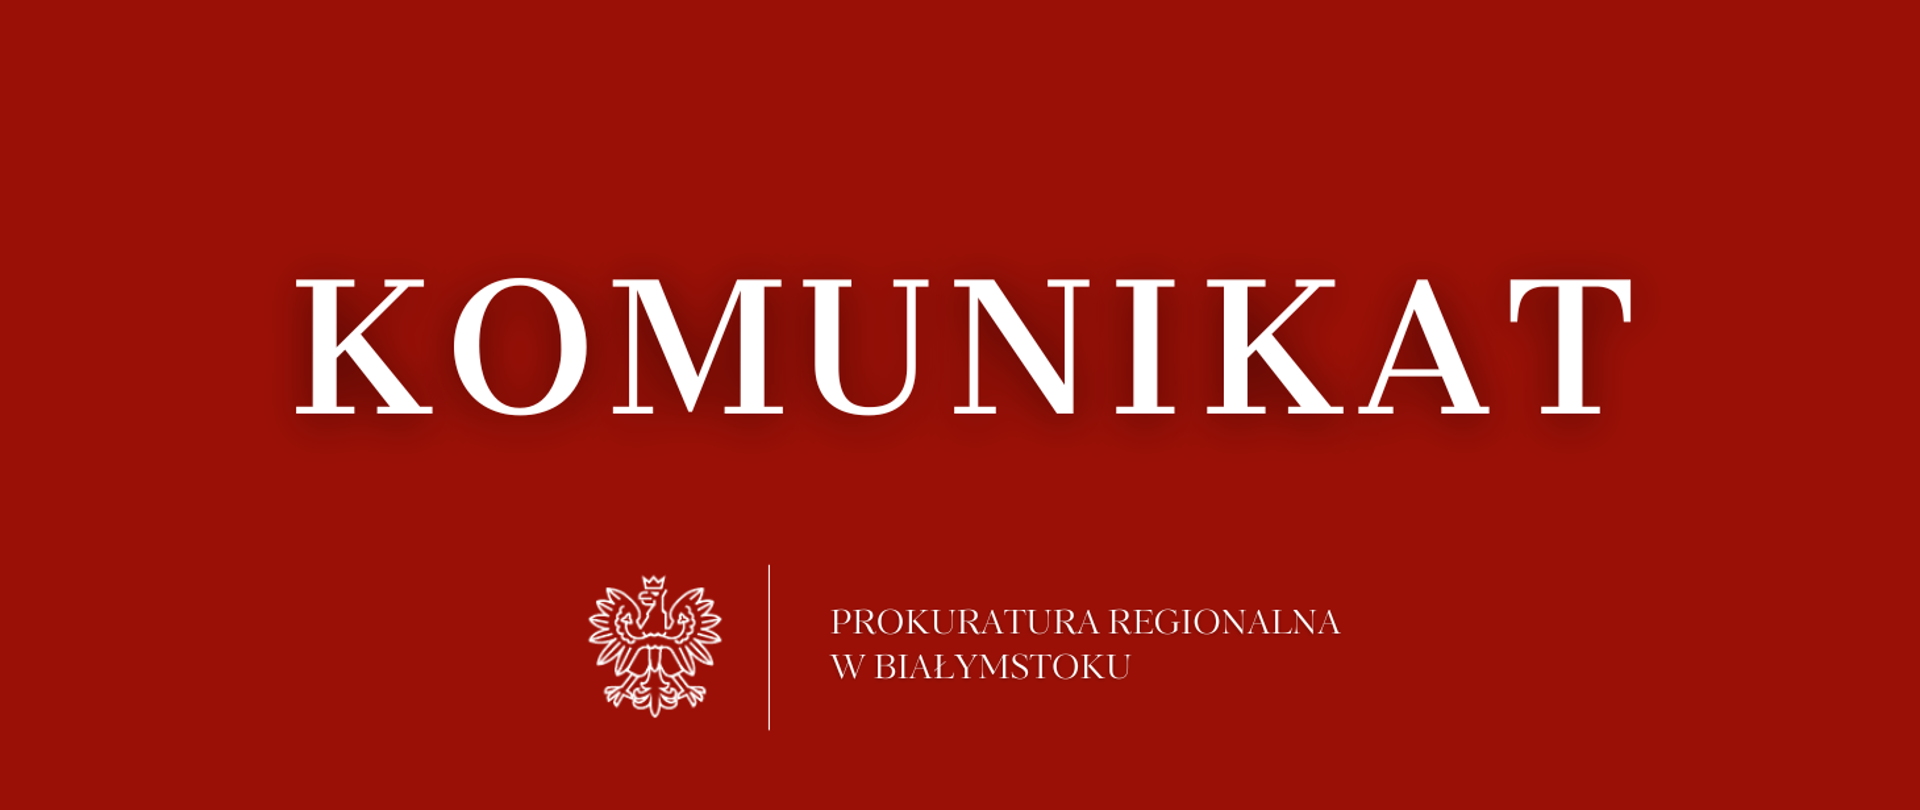 Na czerwonym tle napis komunikat, białe godło oraz nazwa jednostki organizacyjnej Prokuratura Regionalna w Białymstoku